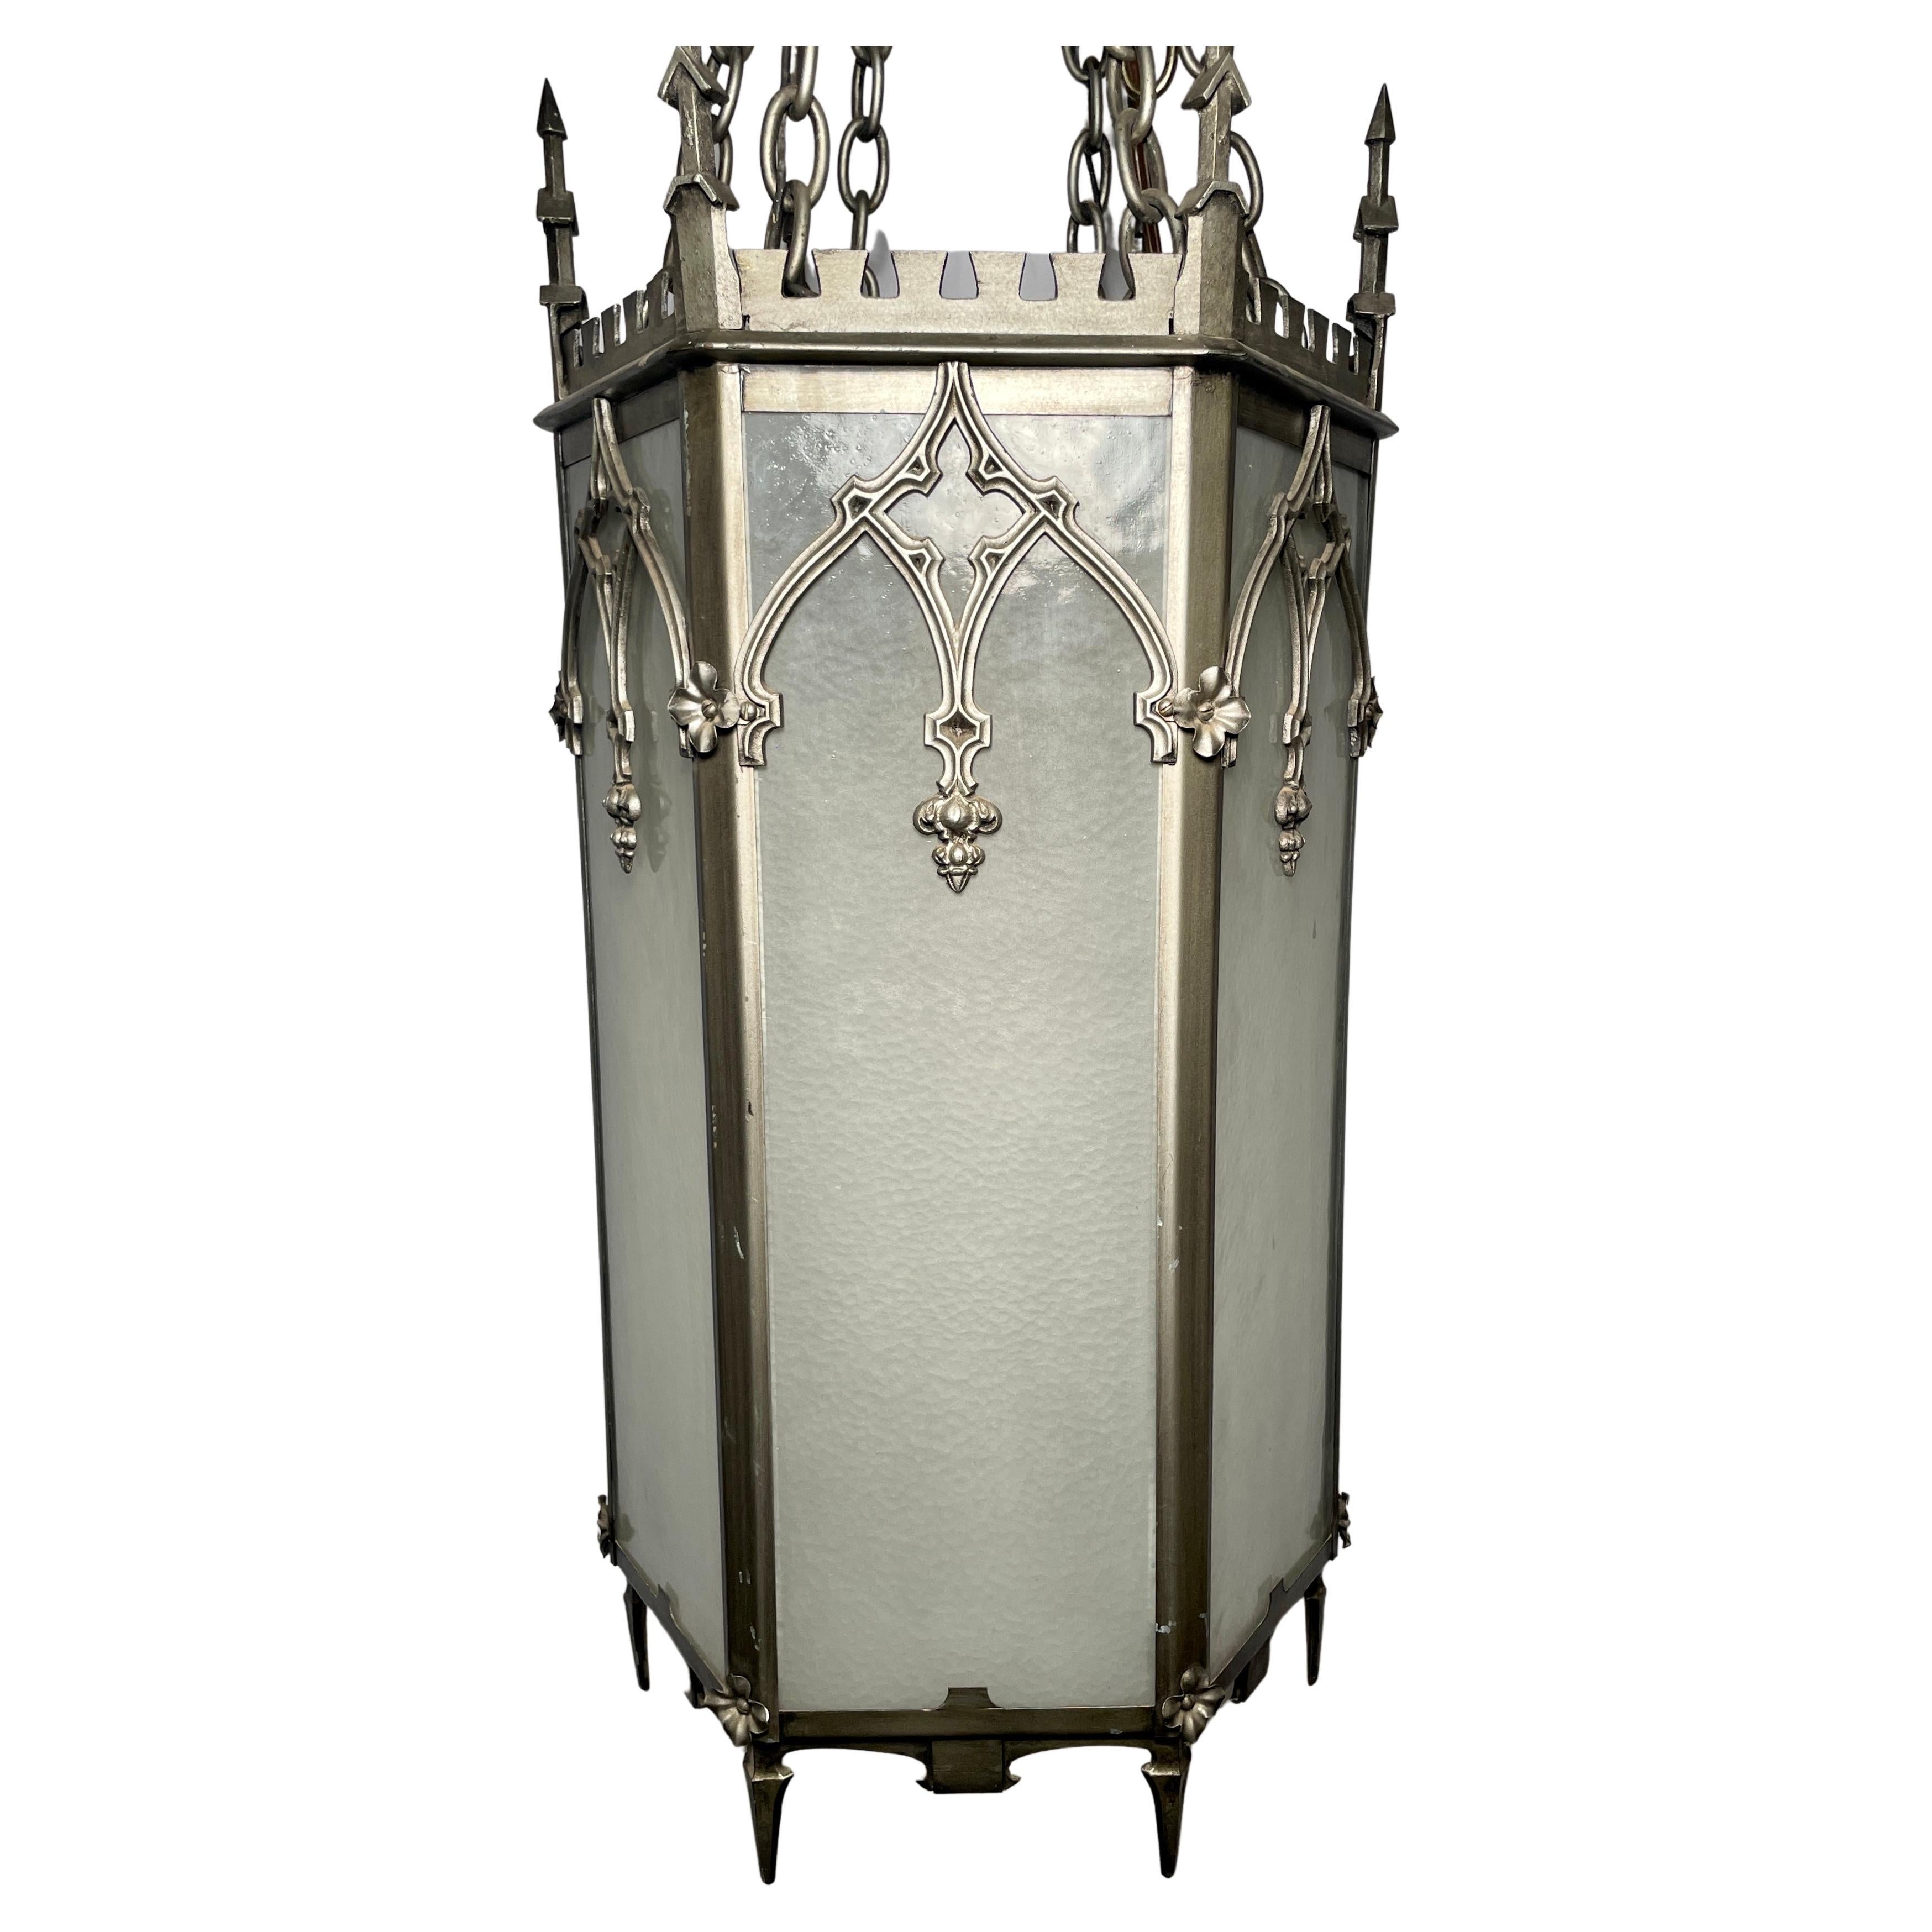 Ancienne lanterne de hall gothique américaine en fer, Circa 1900-1910.